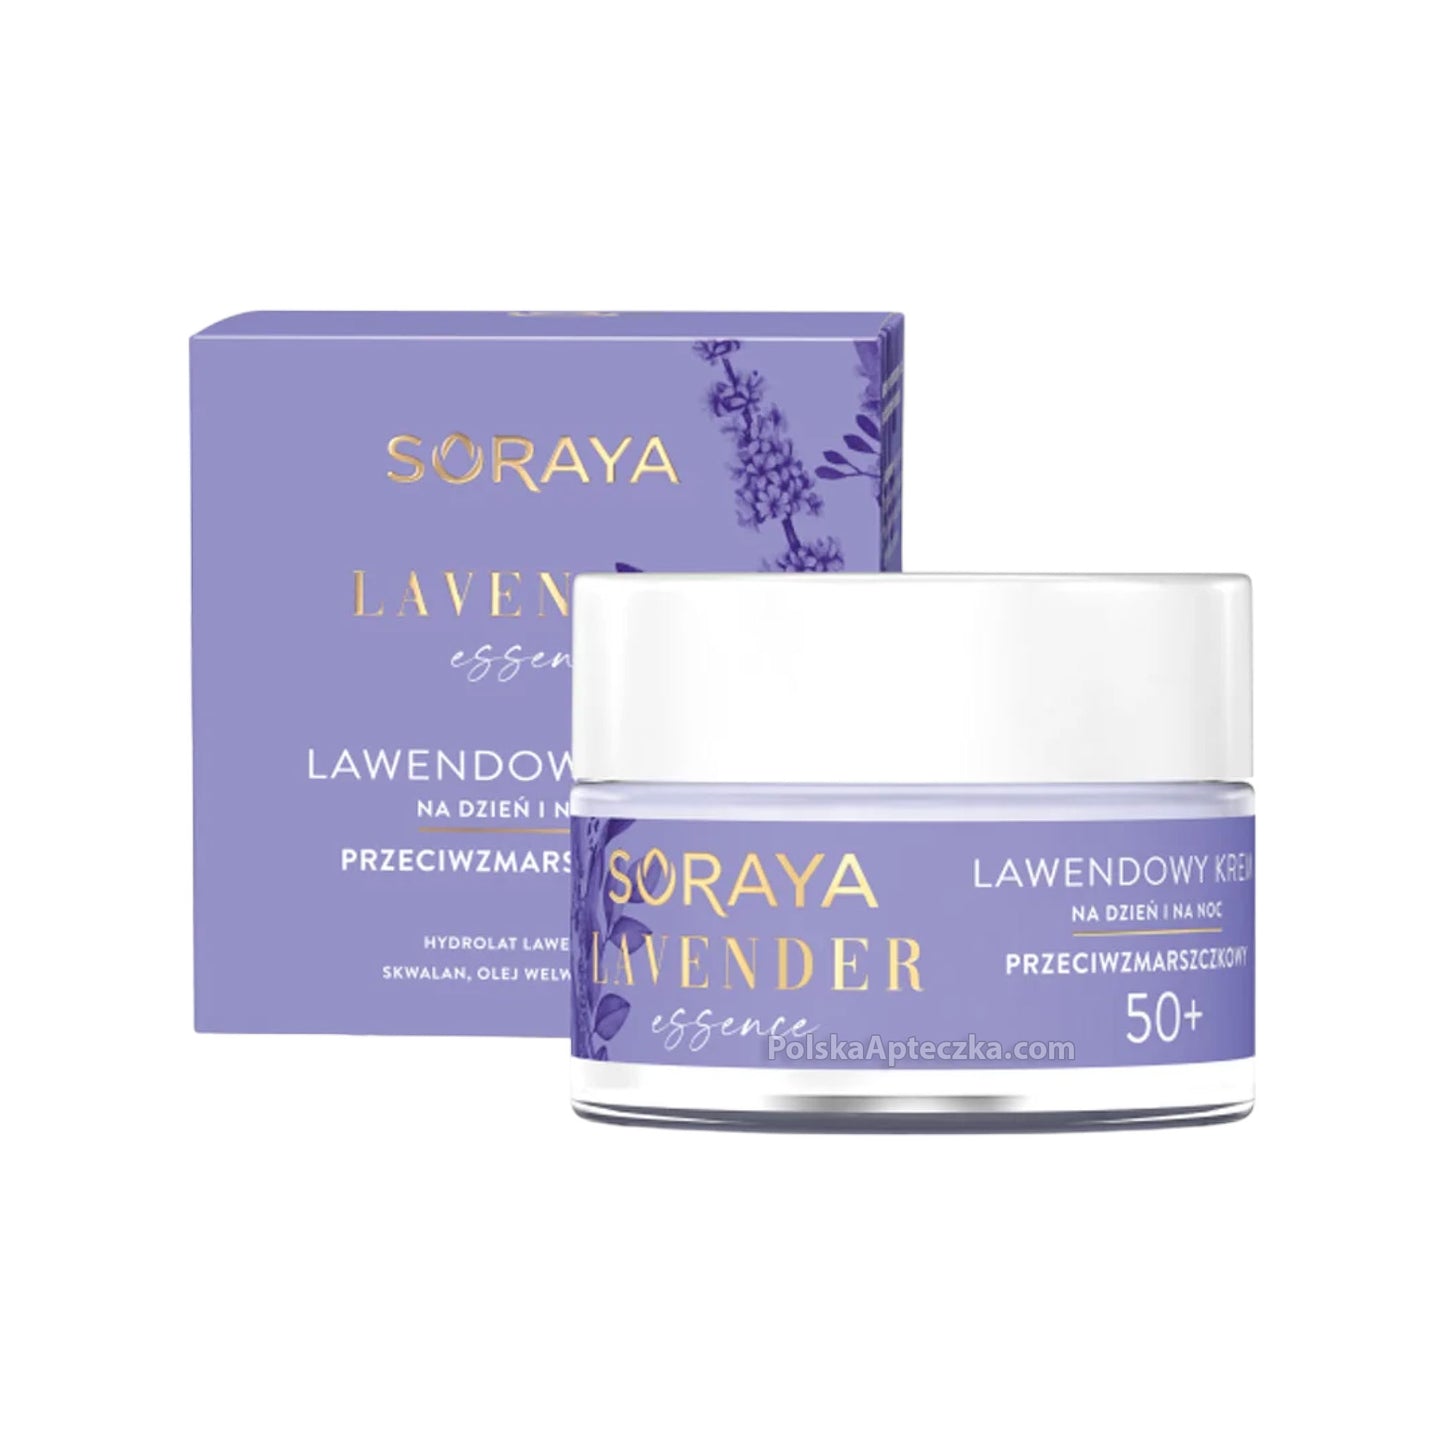 Soraya, Lavender Essence 50+ lawendowy krem przeciwzmarszczkowy na dzień i noc 50ml